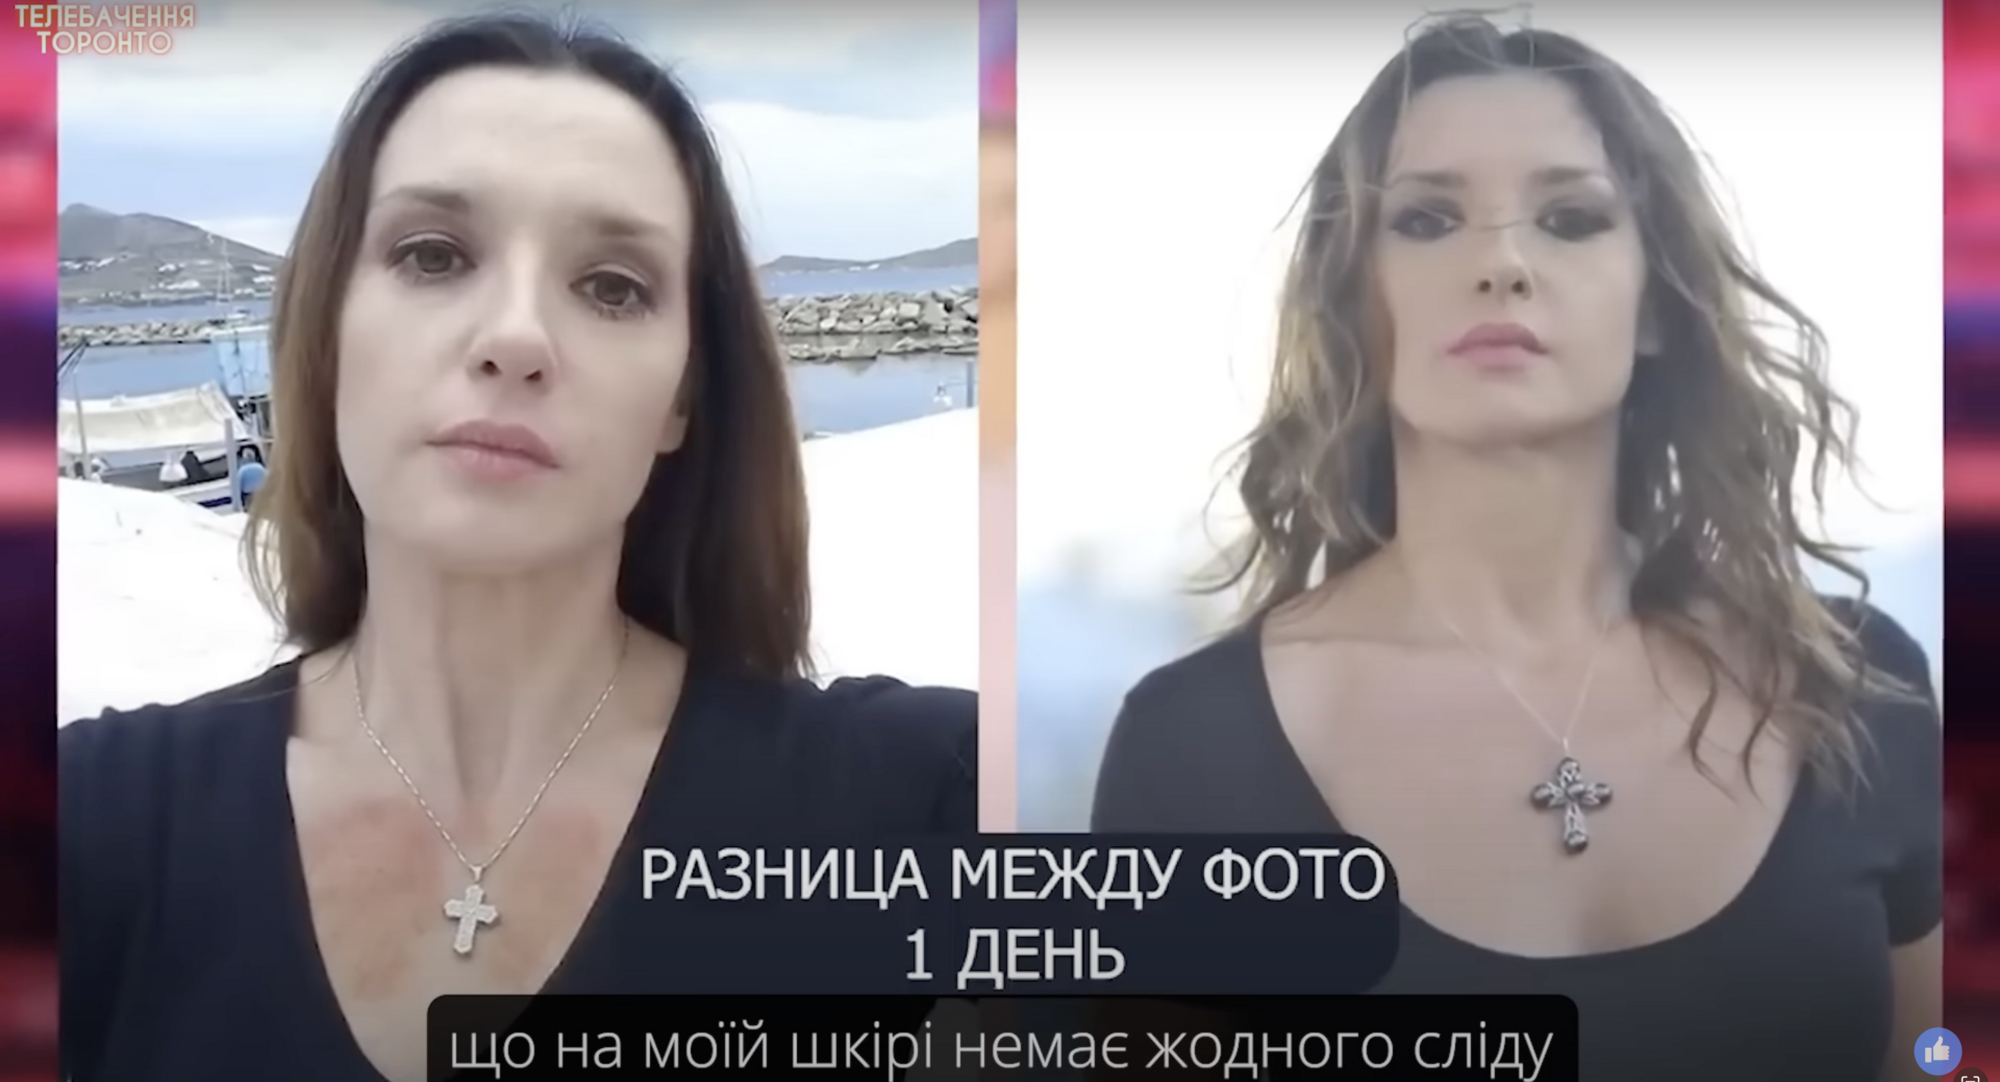 Оксана Марченко всплыла в сети с новым "шоу": ходит с рюкзаком и рассказывает о "8 кровавых ранах на груди"